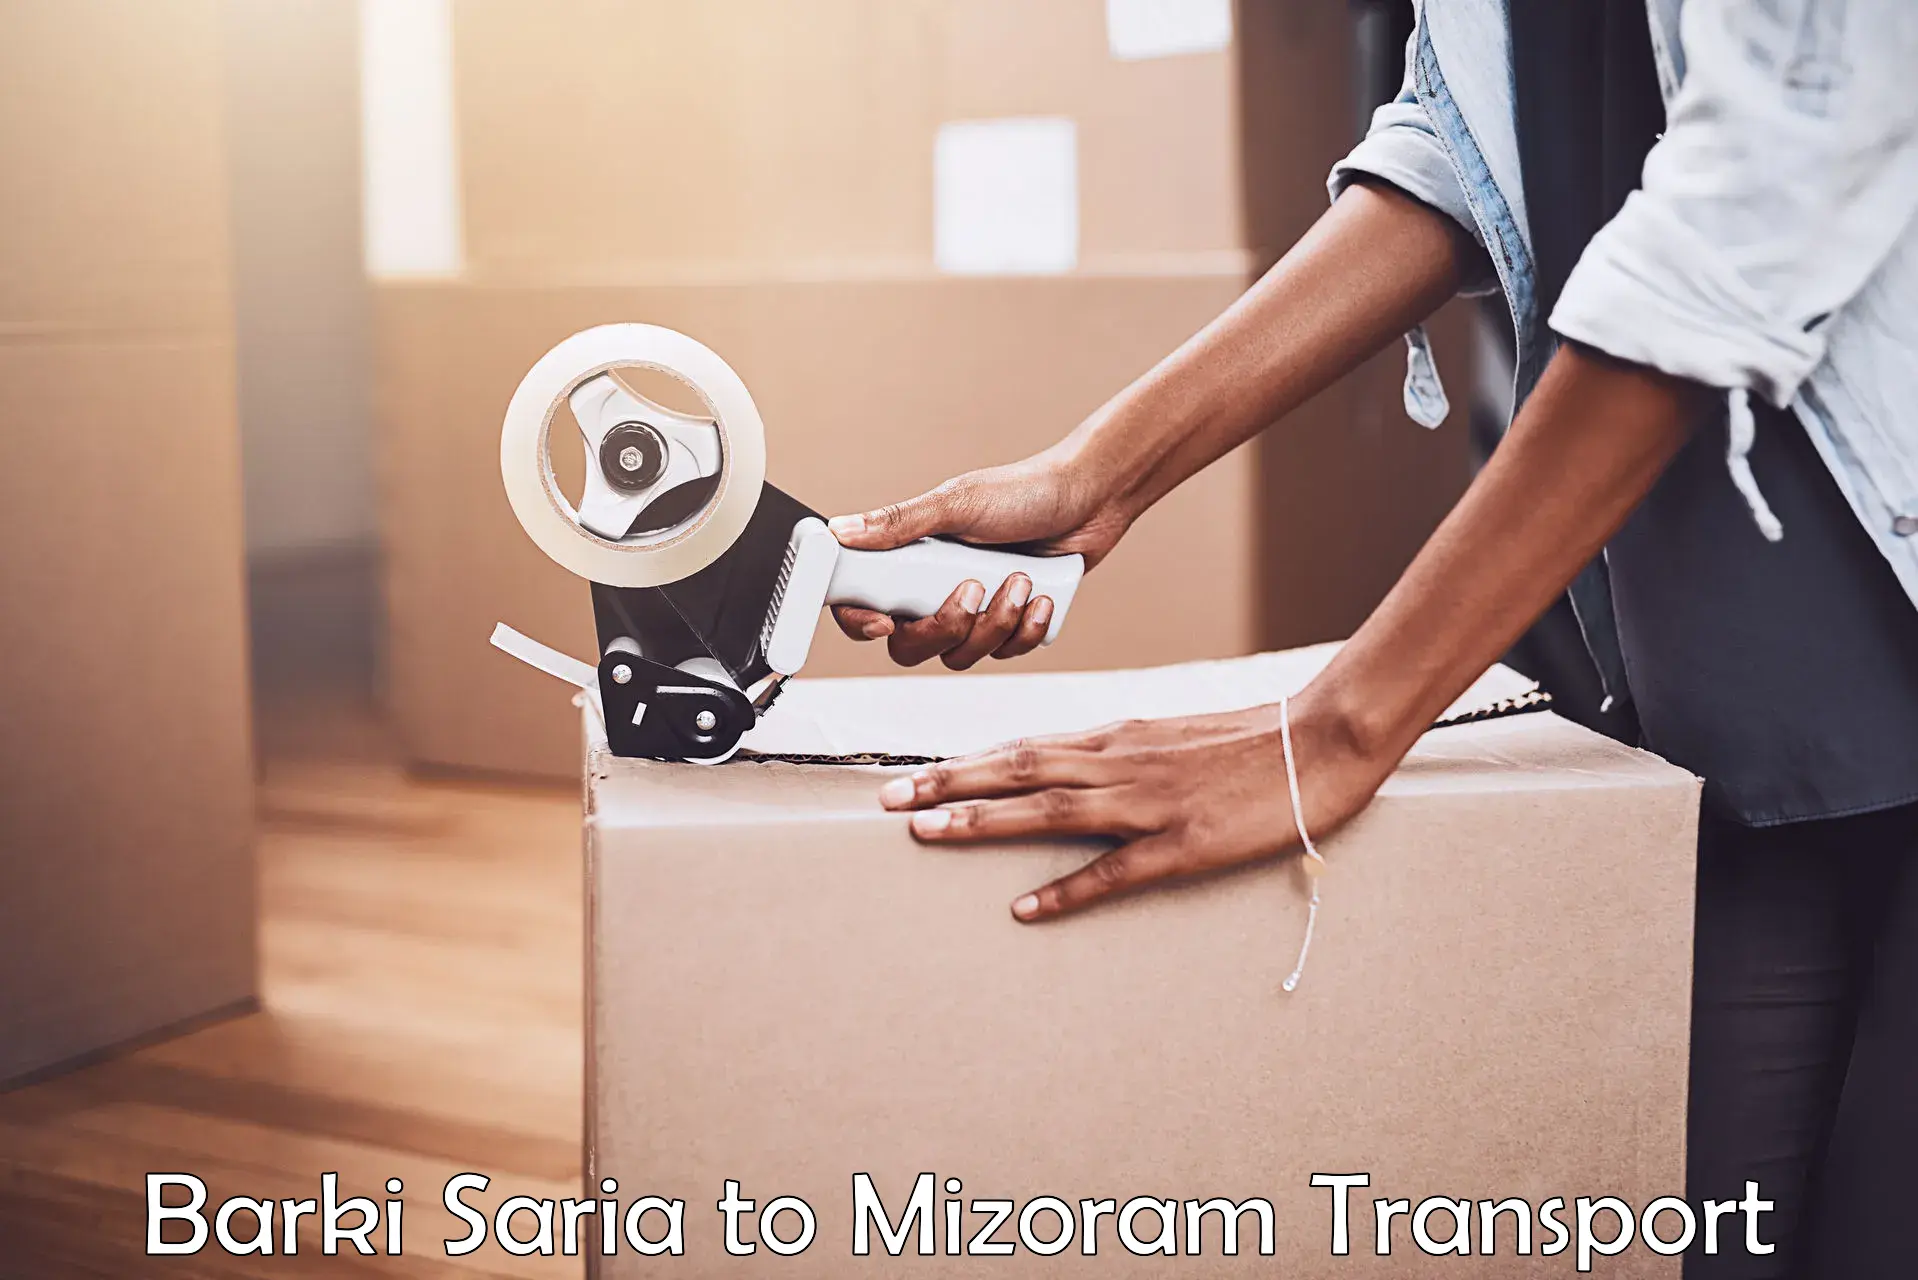 Delivery service in Barki Saria to Mizoram